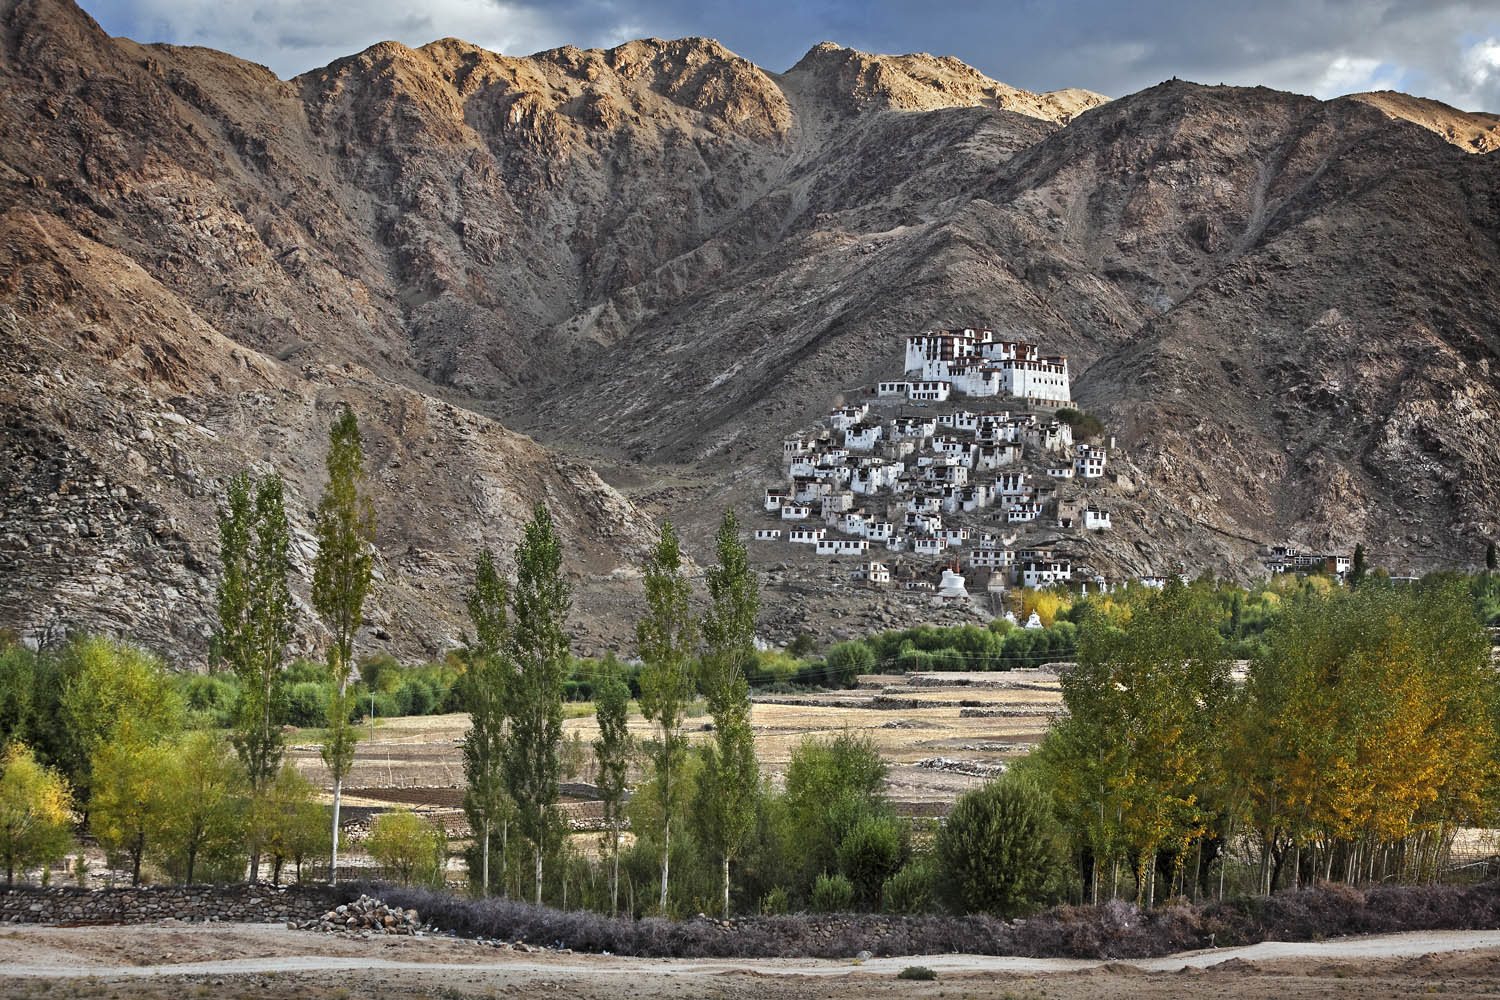 Chemdrey Monastery, Ladakh, India